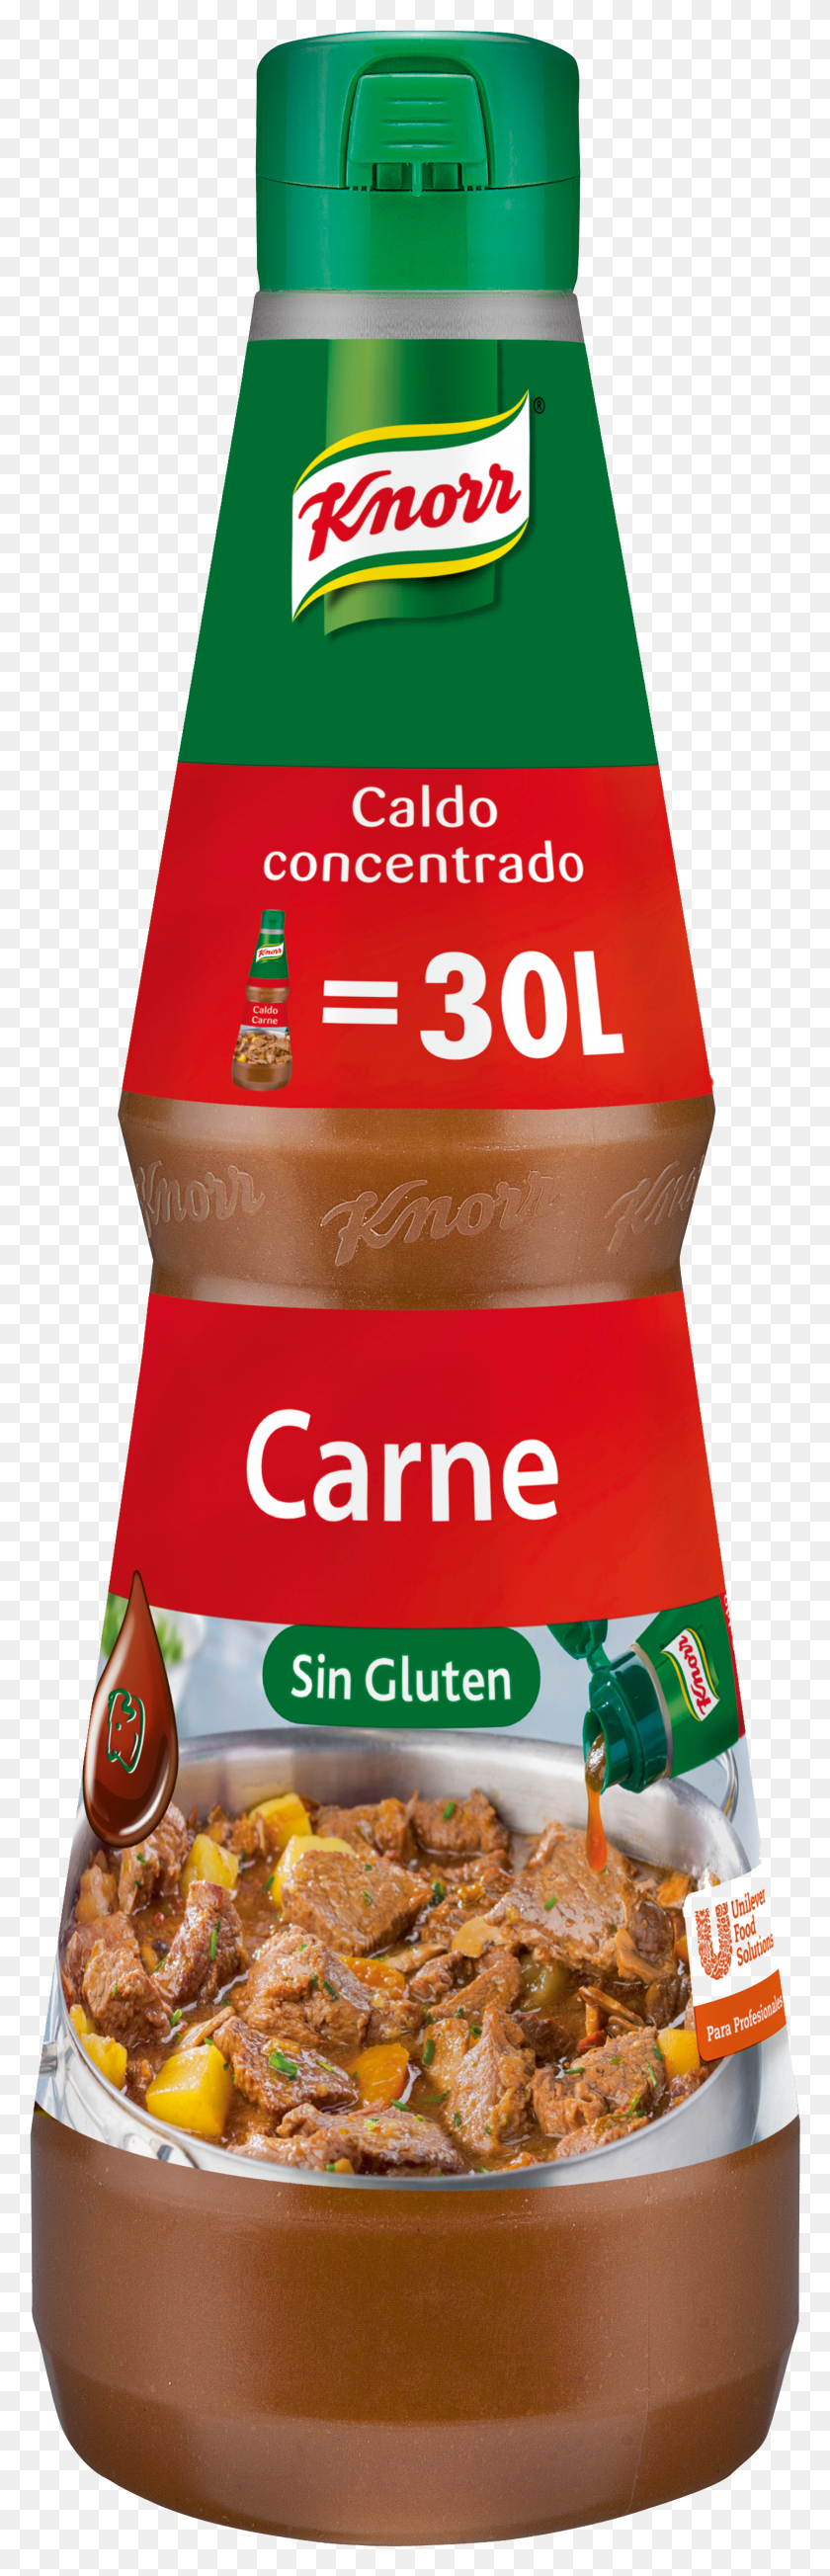 1444x4717 Knorr Caldo Lquido Concentrado De Carne Sin Gluten Knorr Hd Png